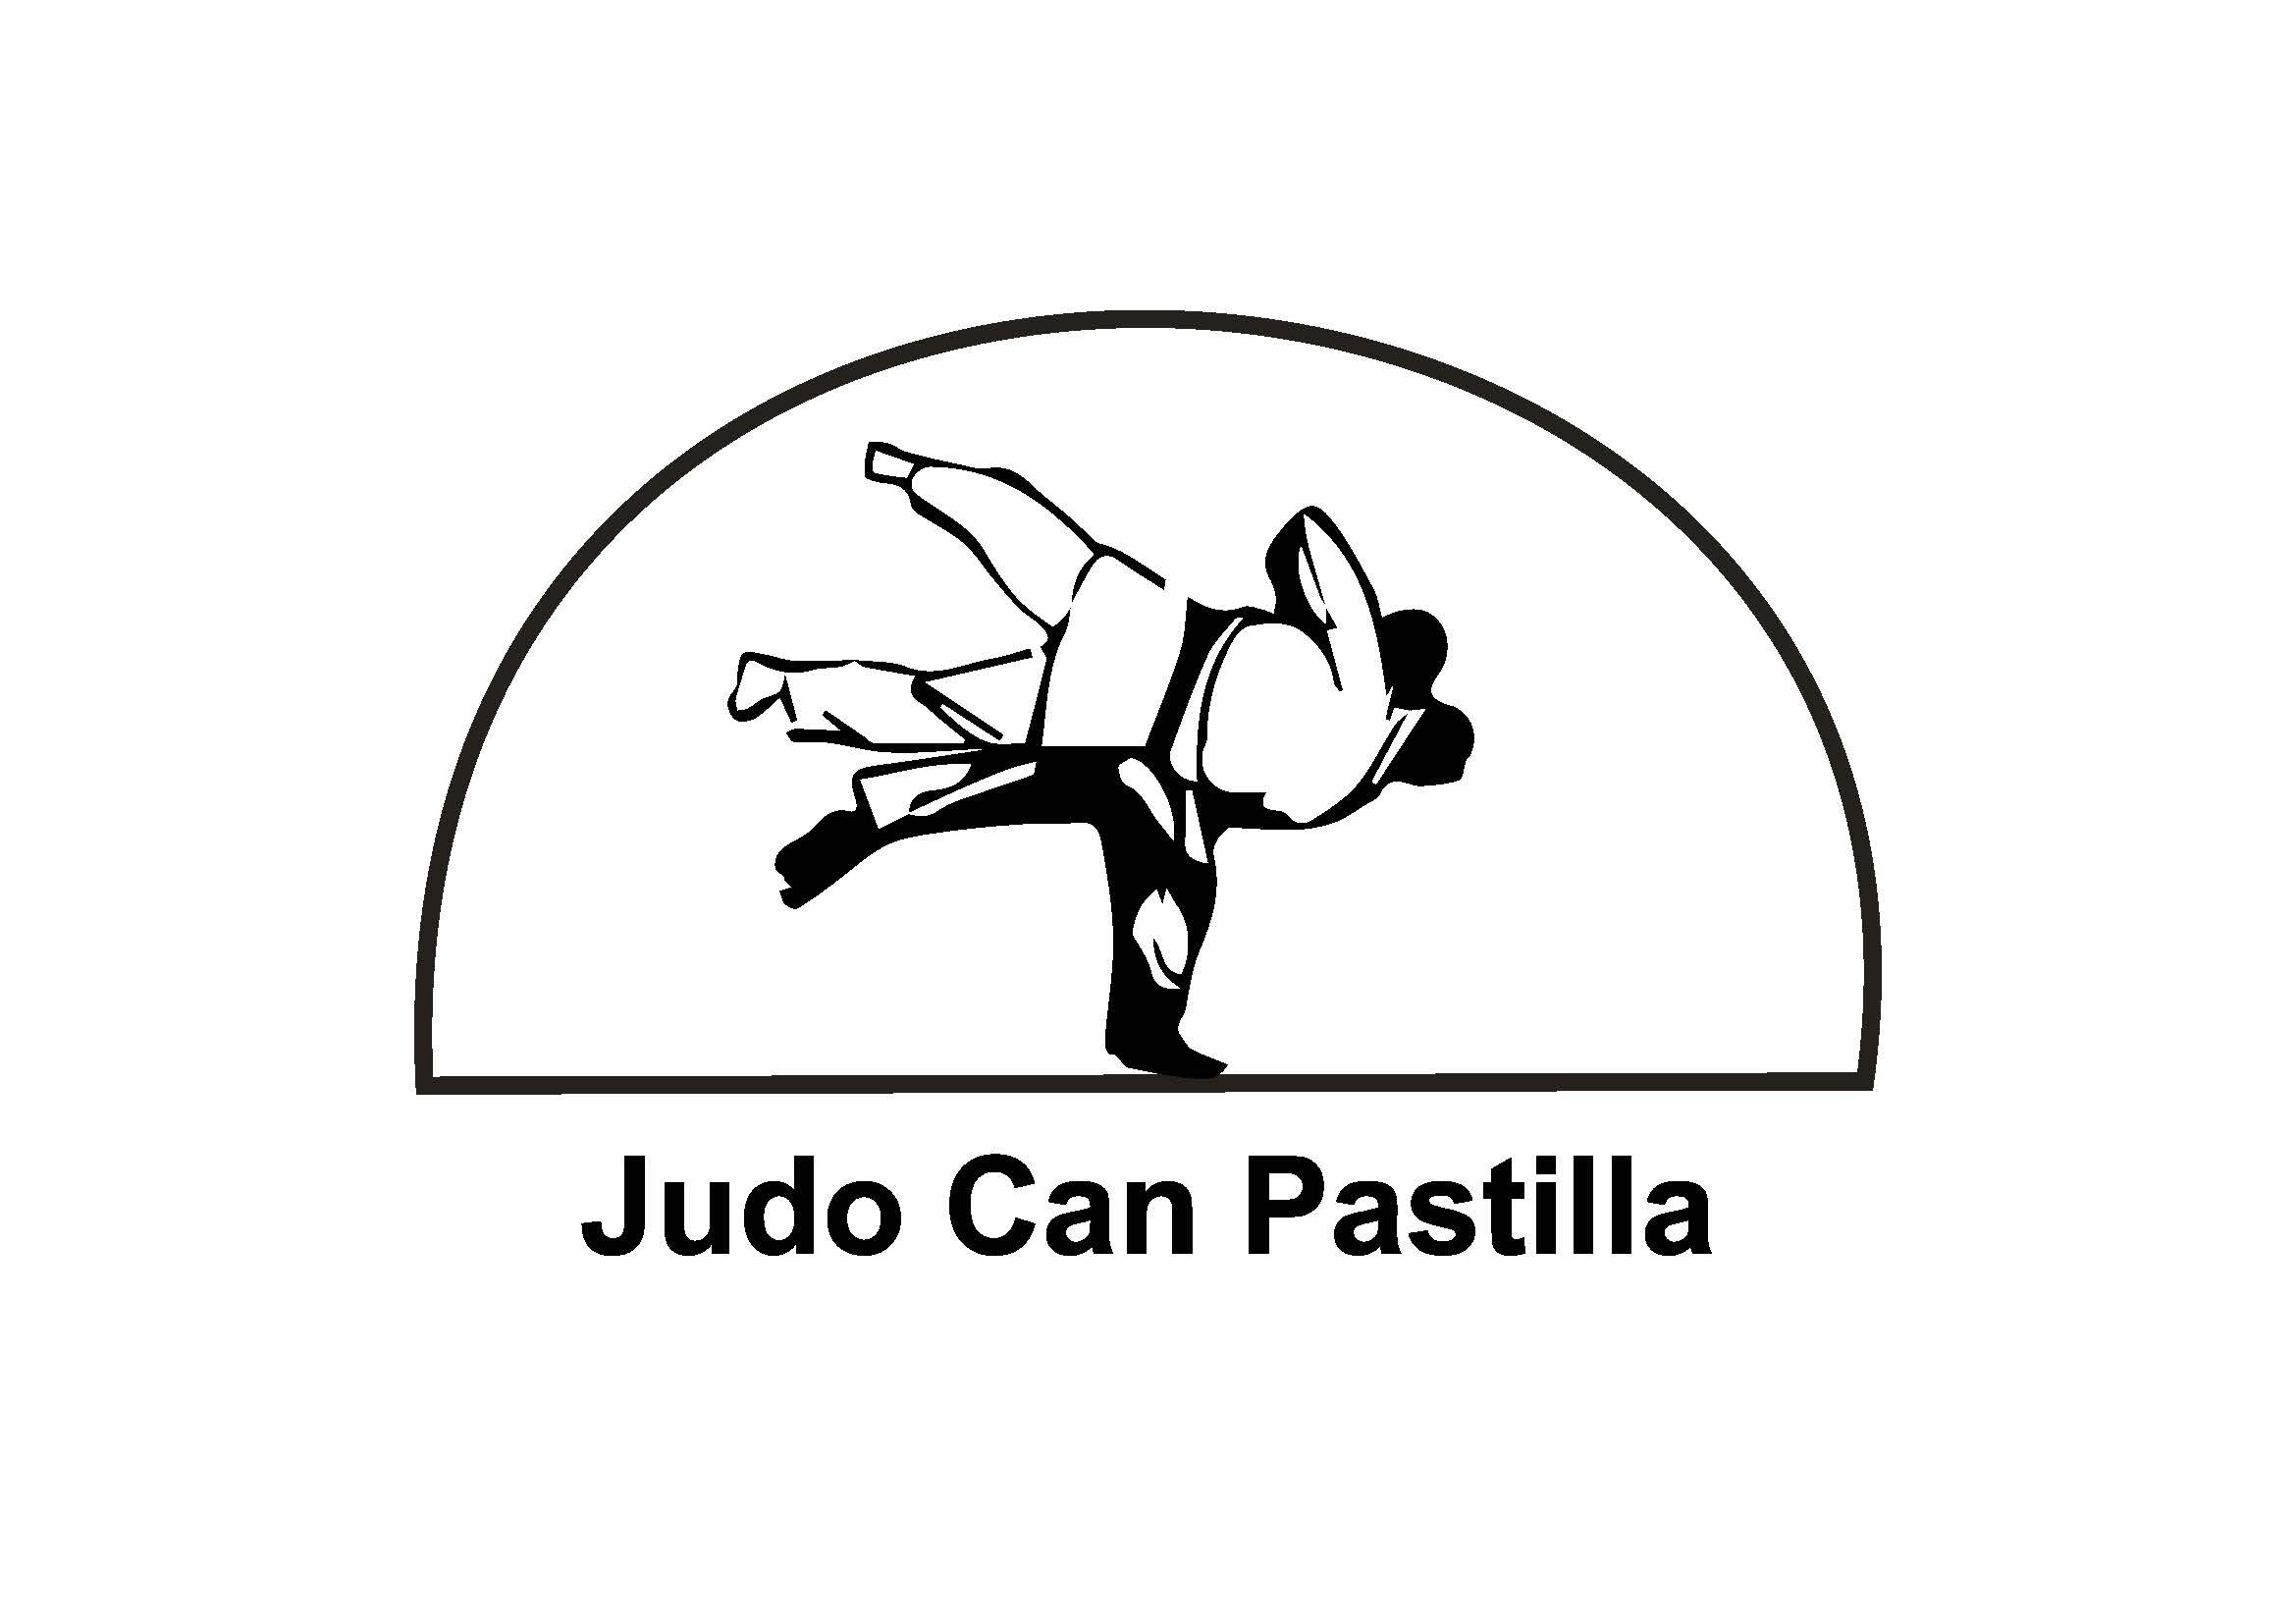 Club de Judo Can Pastilla